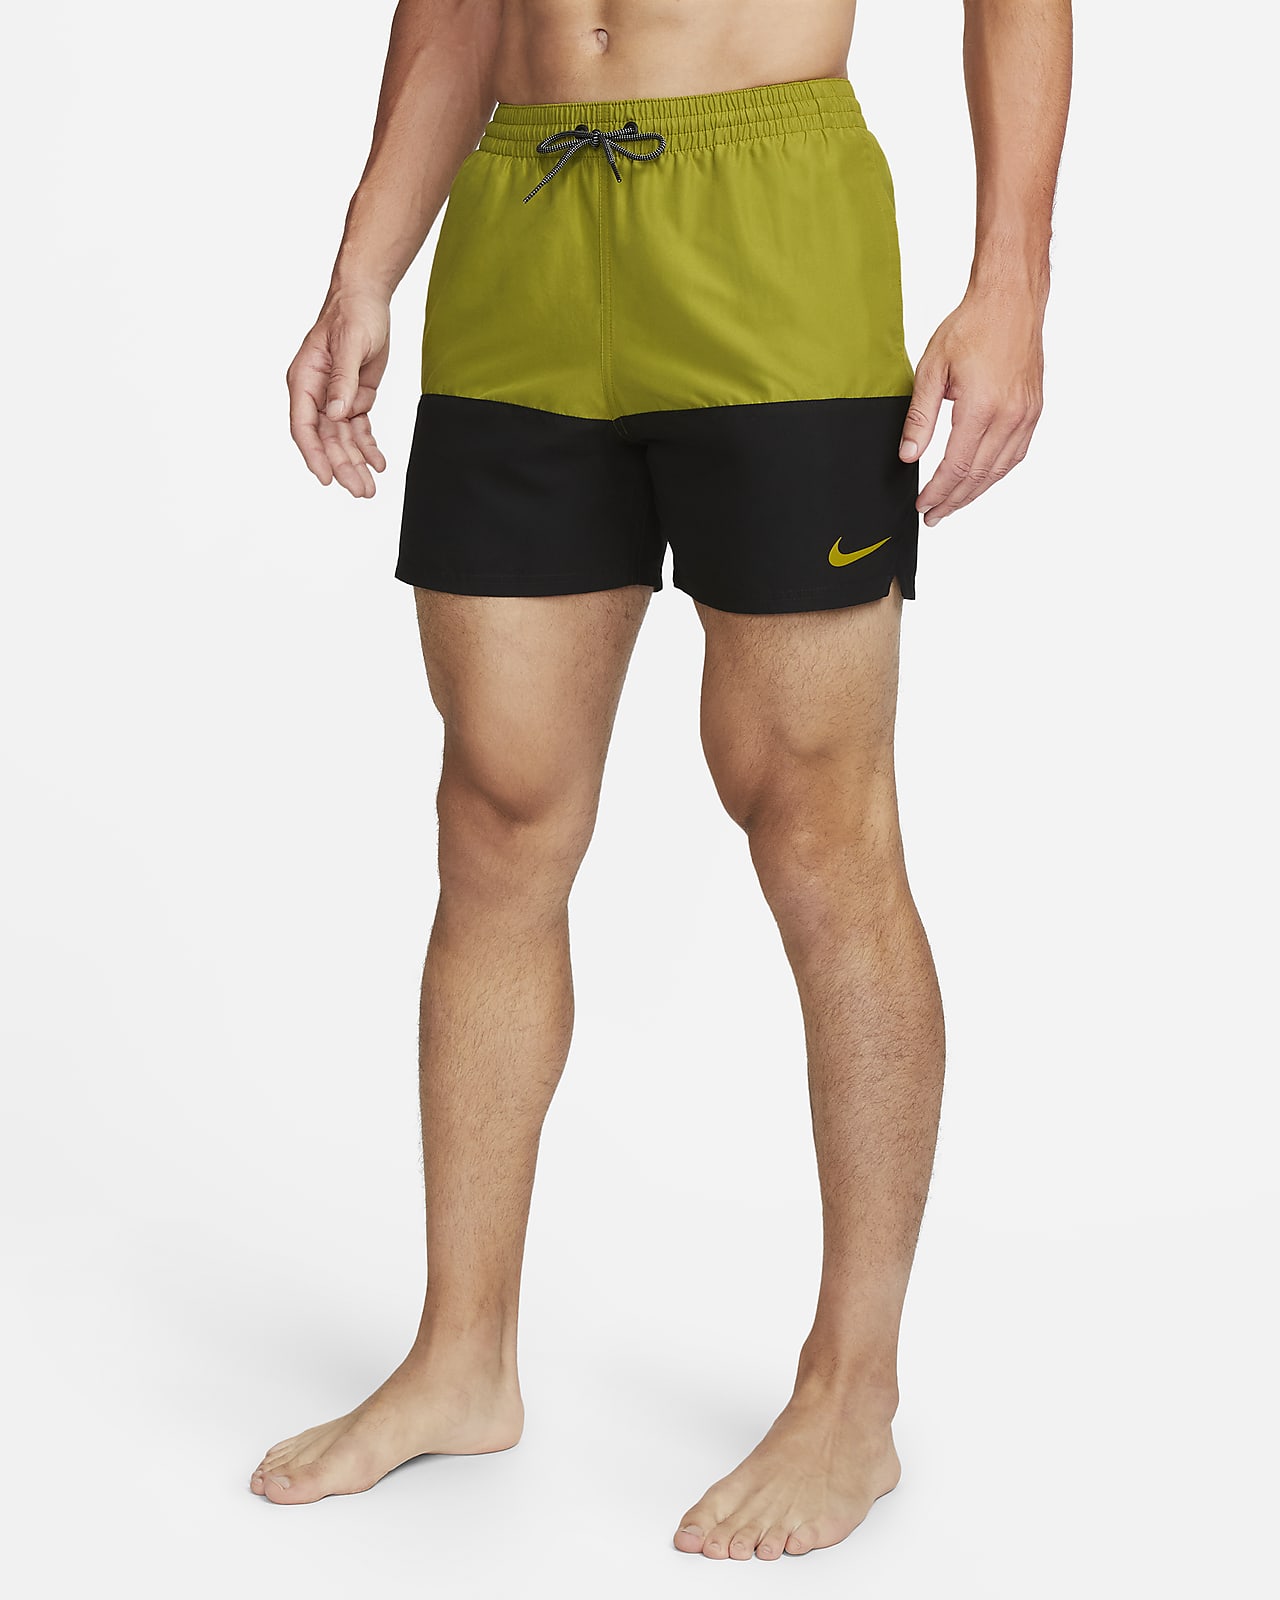 Nike Split Herren-Badeshorts (ca. 12,5 cm)